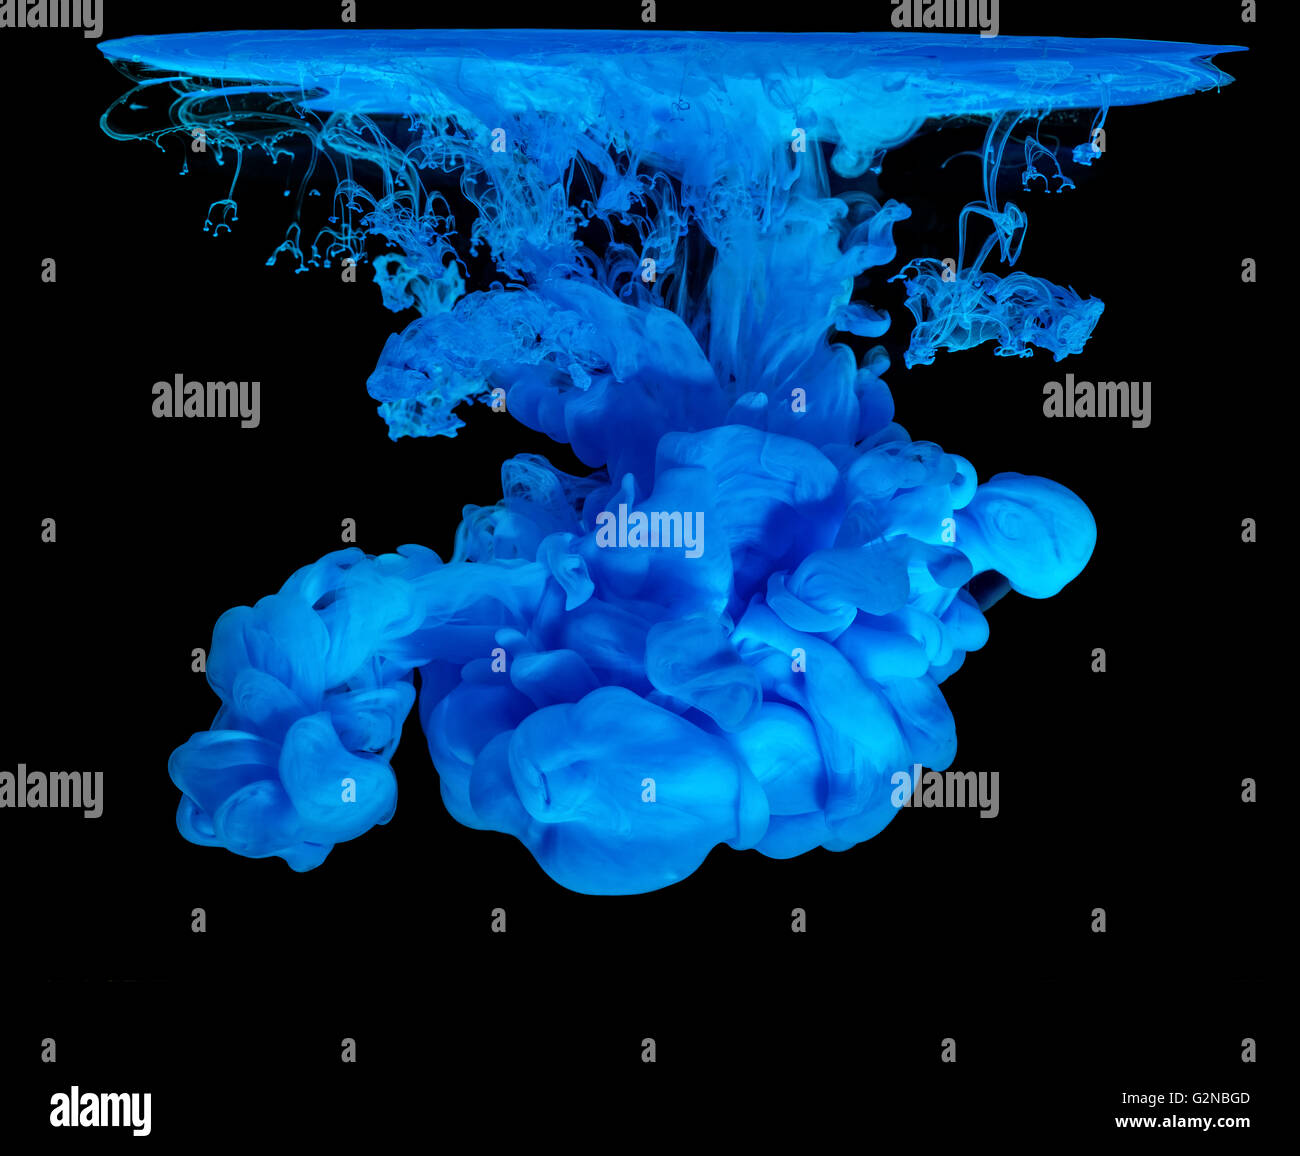 Inchiostro blu in acqua creazione astratta Shape, isolati su sfondo nero Foto Stock